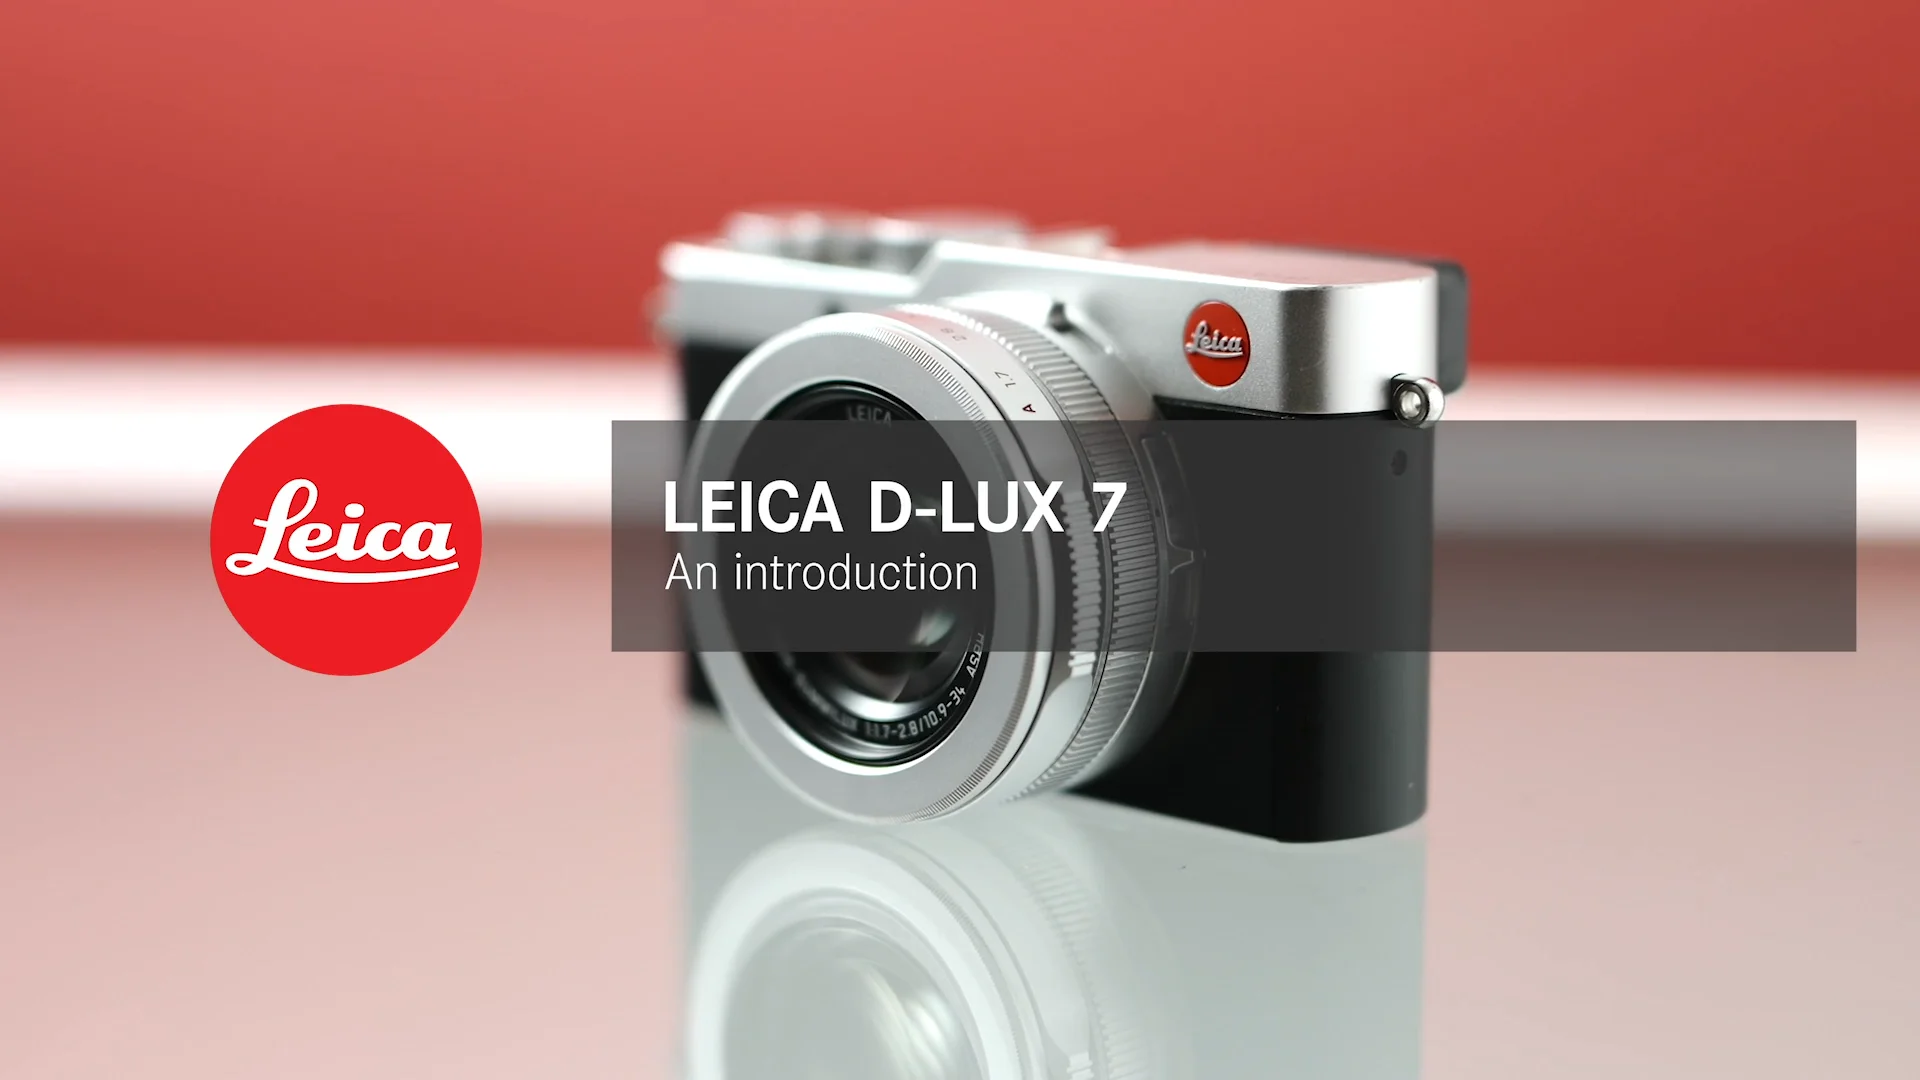 Details - LEICA D-LUX 7